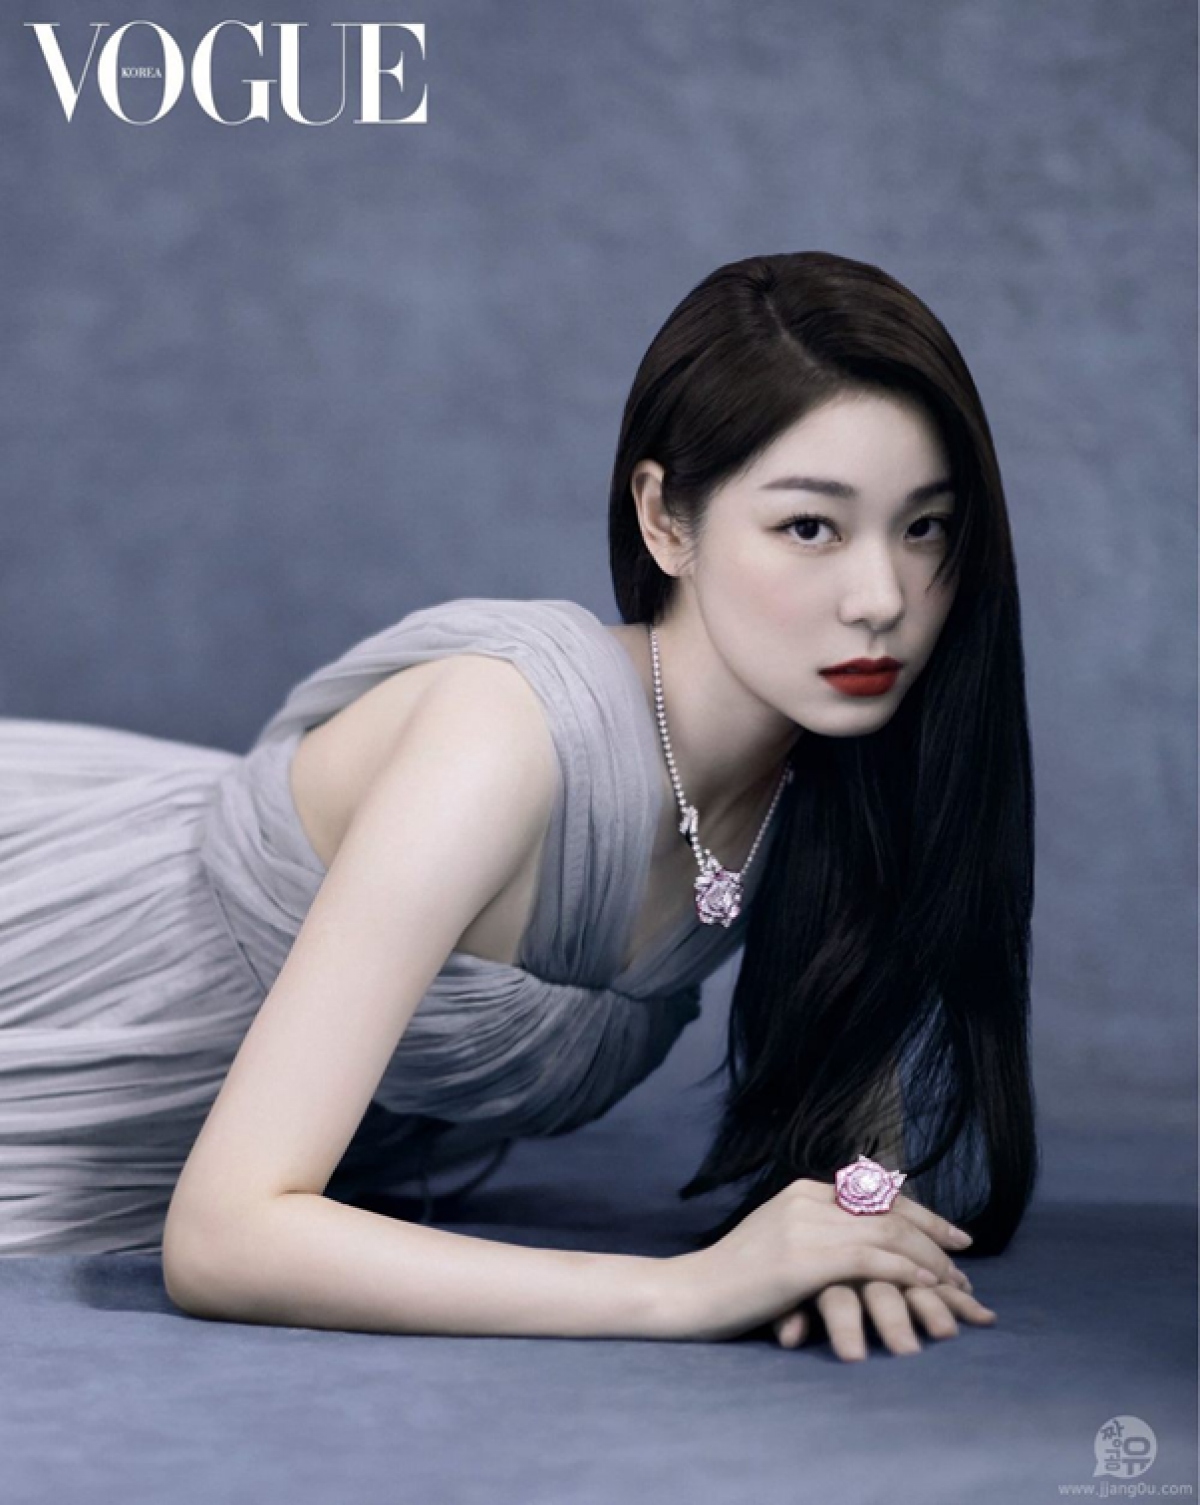 Huyền thoại trượt băng Kim Yuna khoe vẻ thanh lịch, quyến rũ trên tạp chí Elle - Ảnh 4.